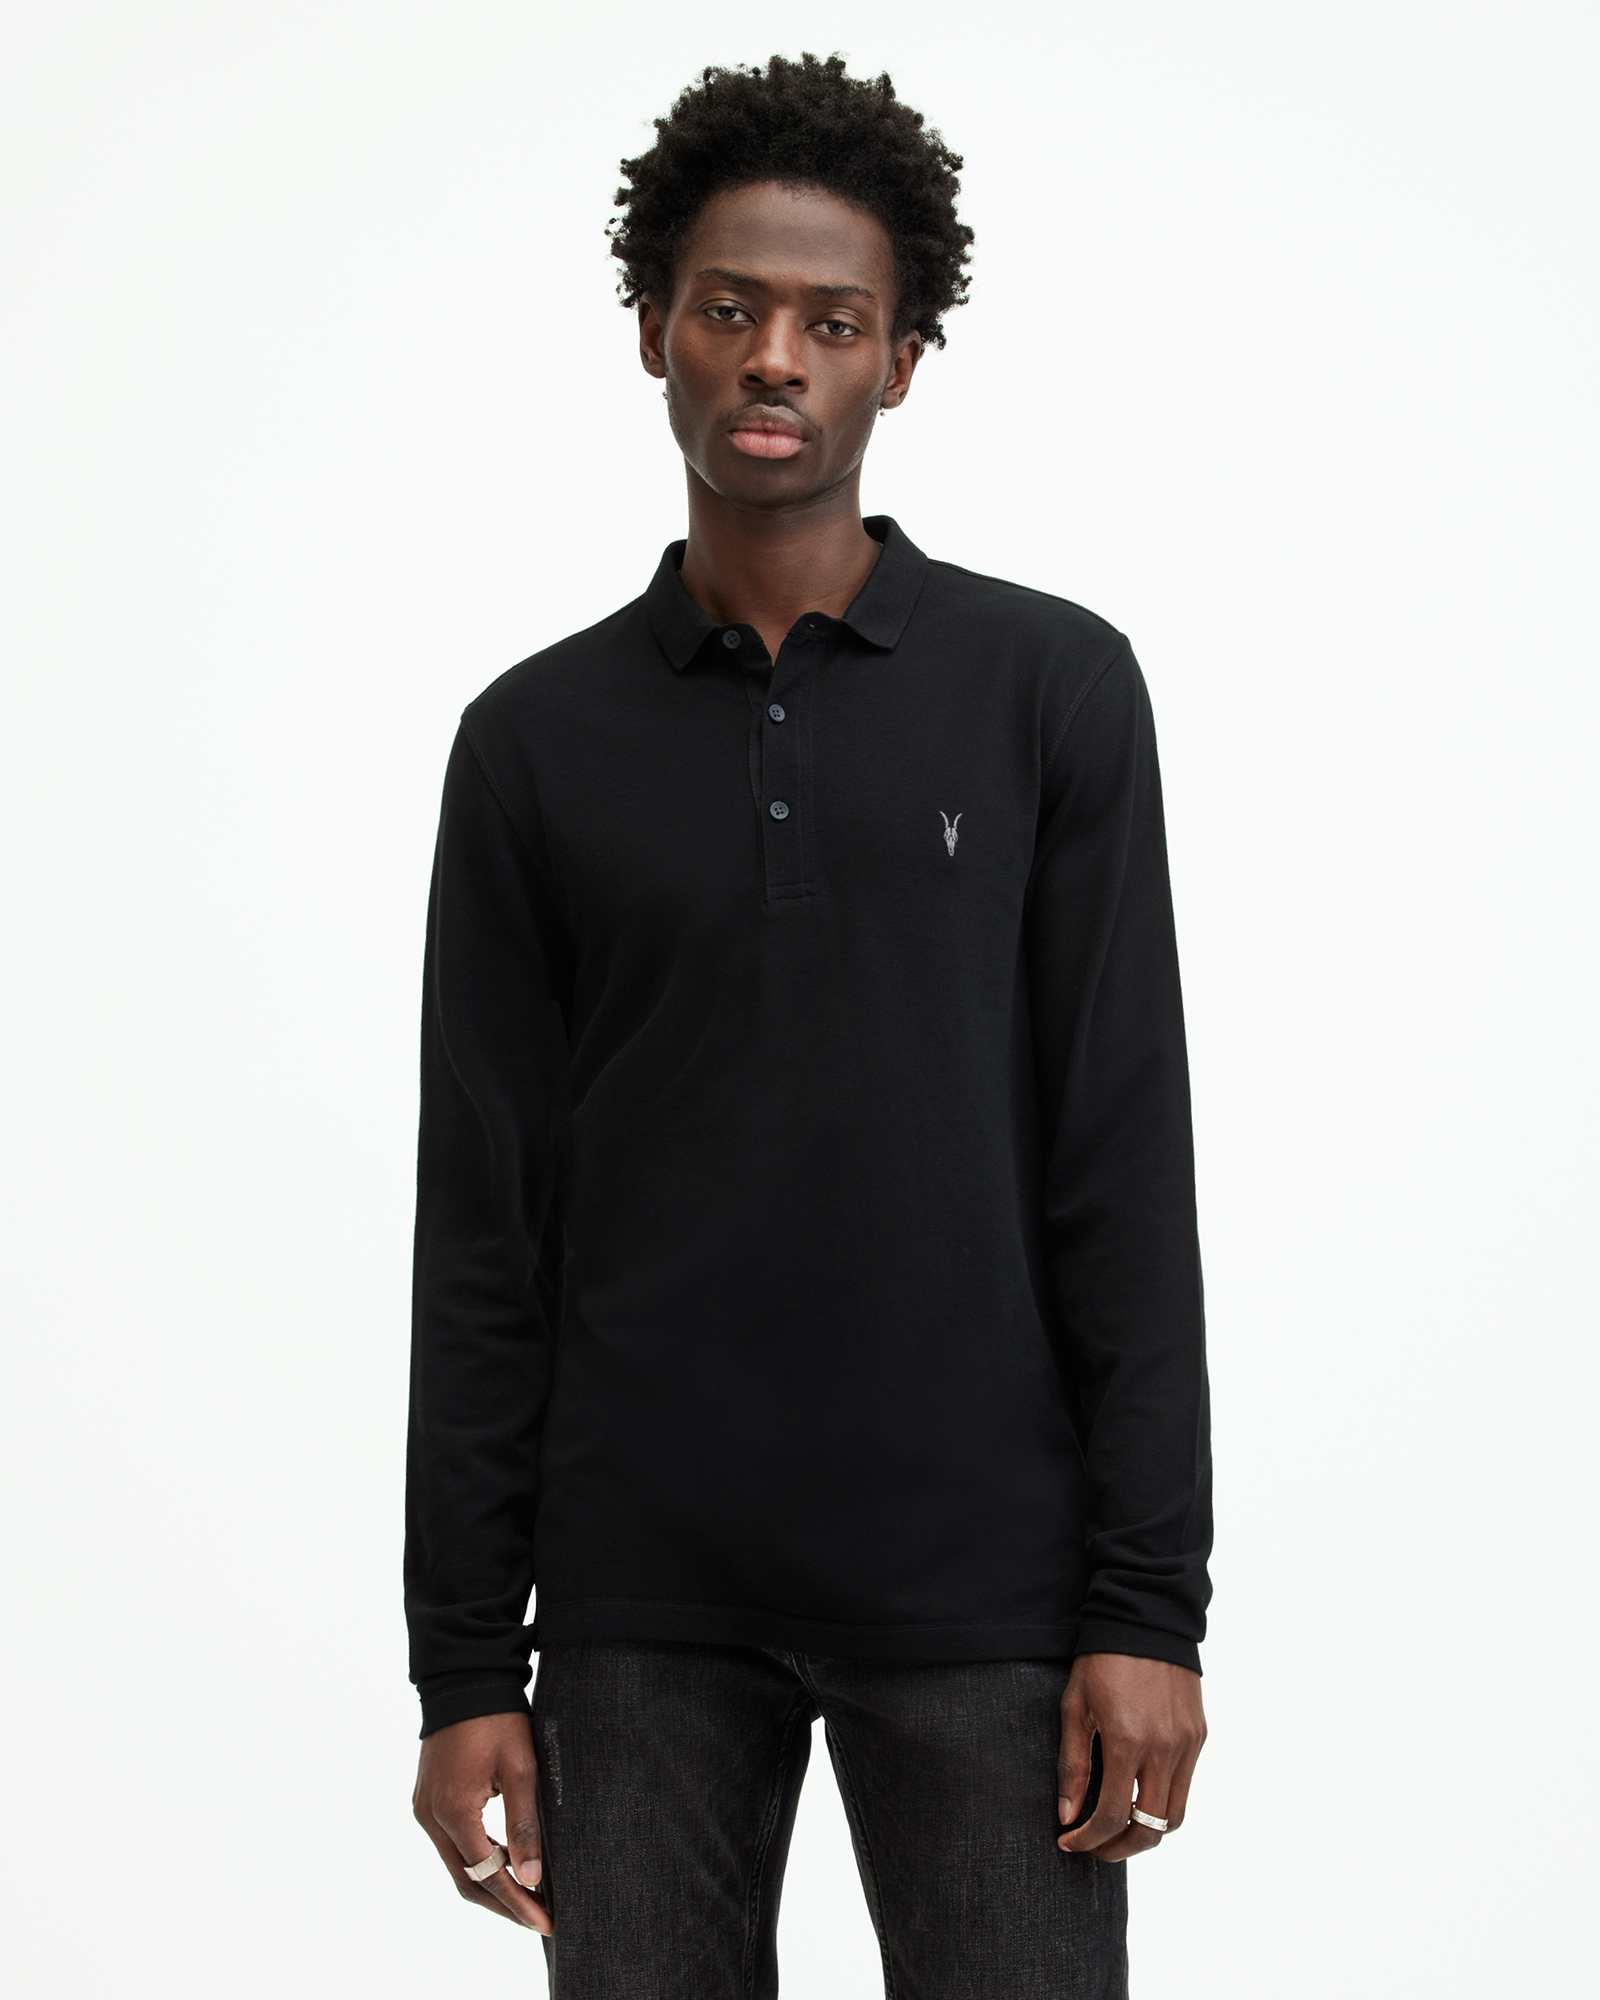 AllSaints Men's Cotton Reform Long Sleeve Polo Shirt, Black, Size: M